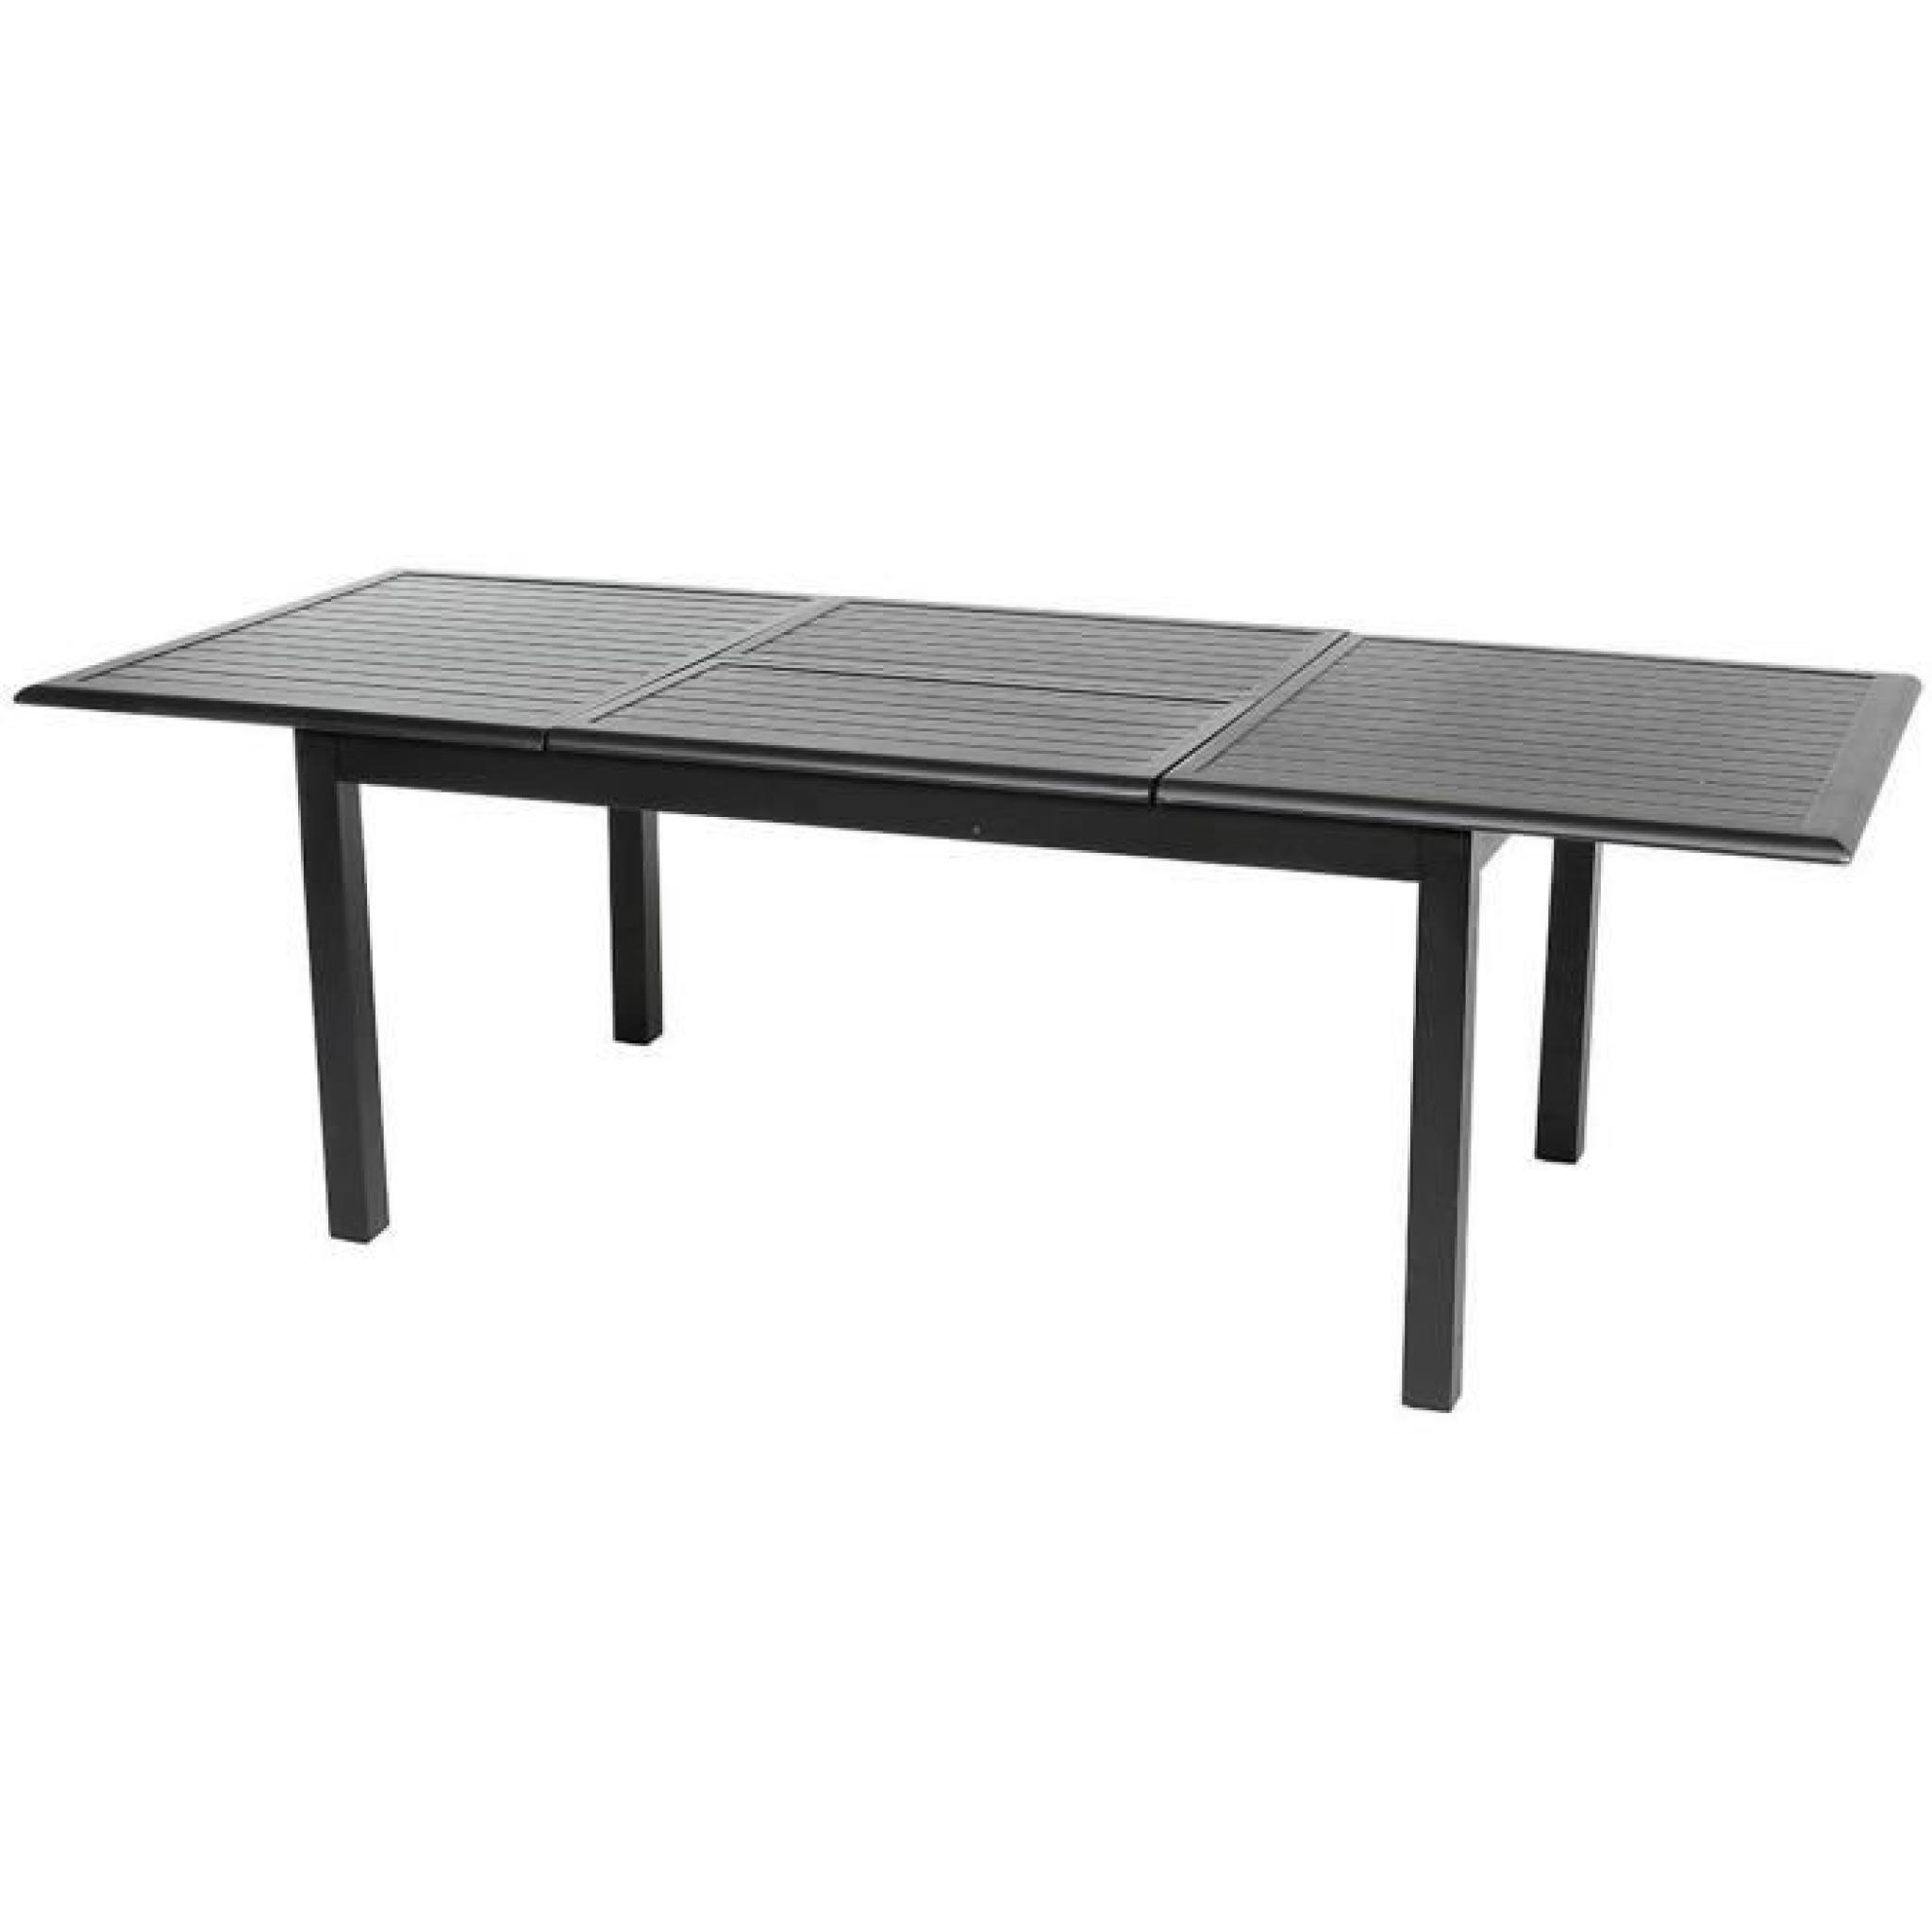 Table extensible en aluminium de couleur noire - Dim : L 160/240 x P 100 x H 75 cm  